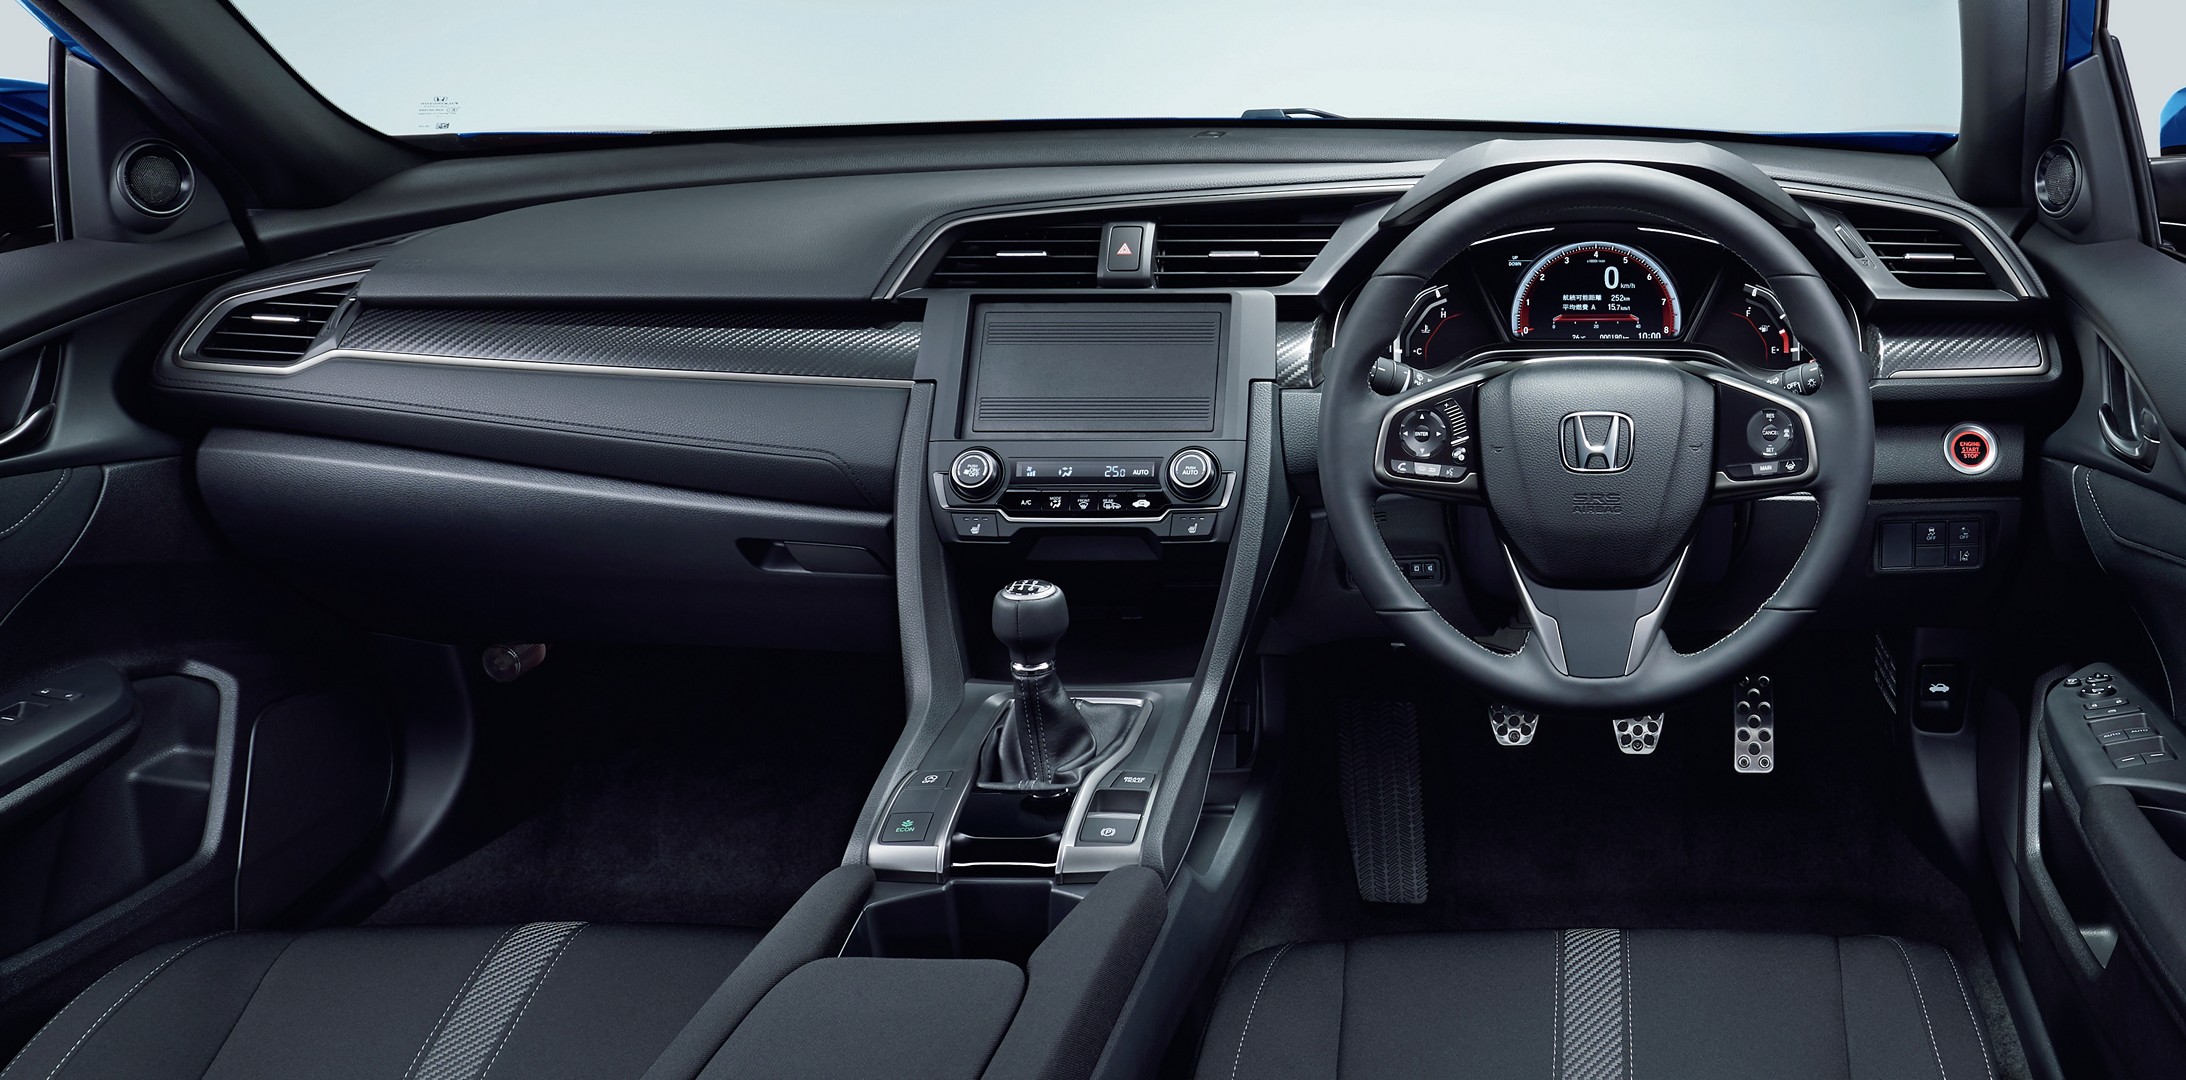 Honda Baru Saja Luncurkan Civic Turbo Sedan Hatchback Di Jepang